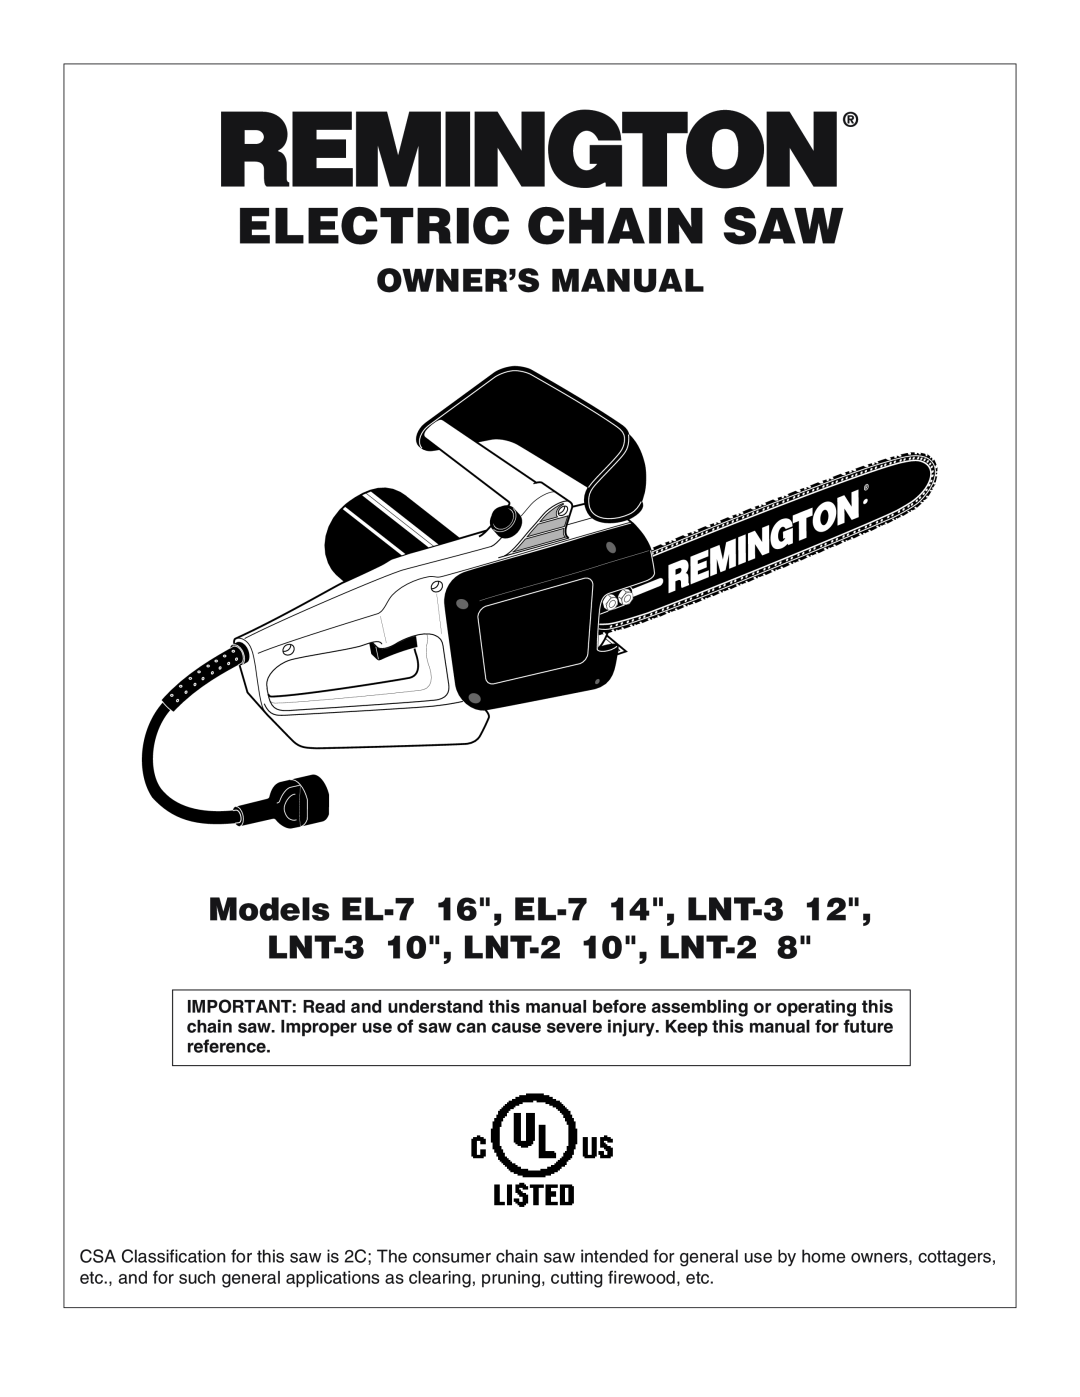 Desa LNT-2 8-inch, LNT-3 12-inch, EL-7 14-inch, EL-7 16-inch owner manual LNT-3 10, LNT-2 10, LNT-2, Electric Chain Saw 